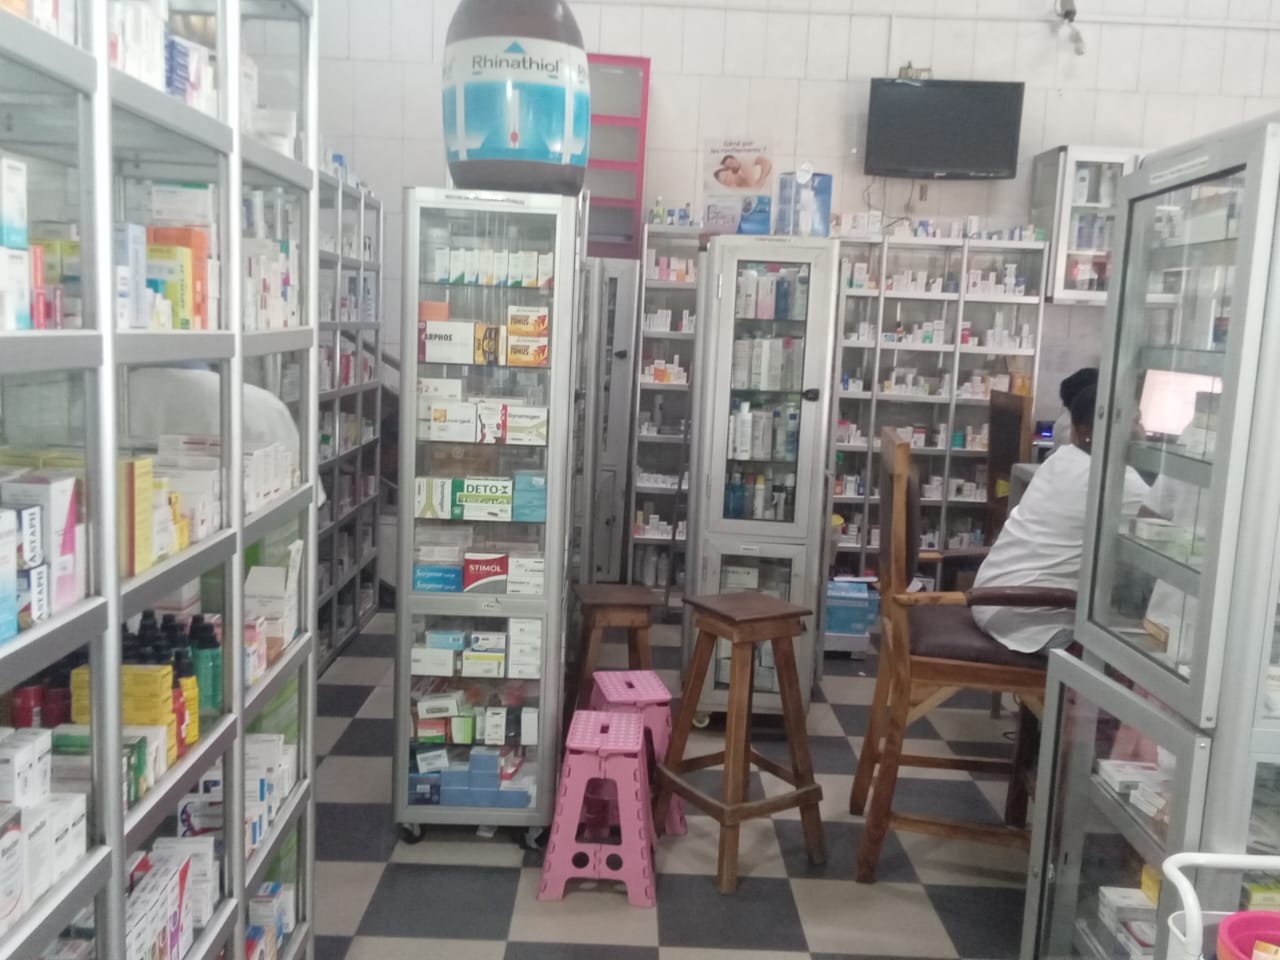 Pharmacie BON SAMARITAIN